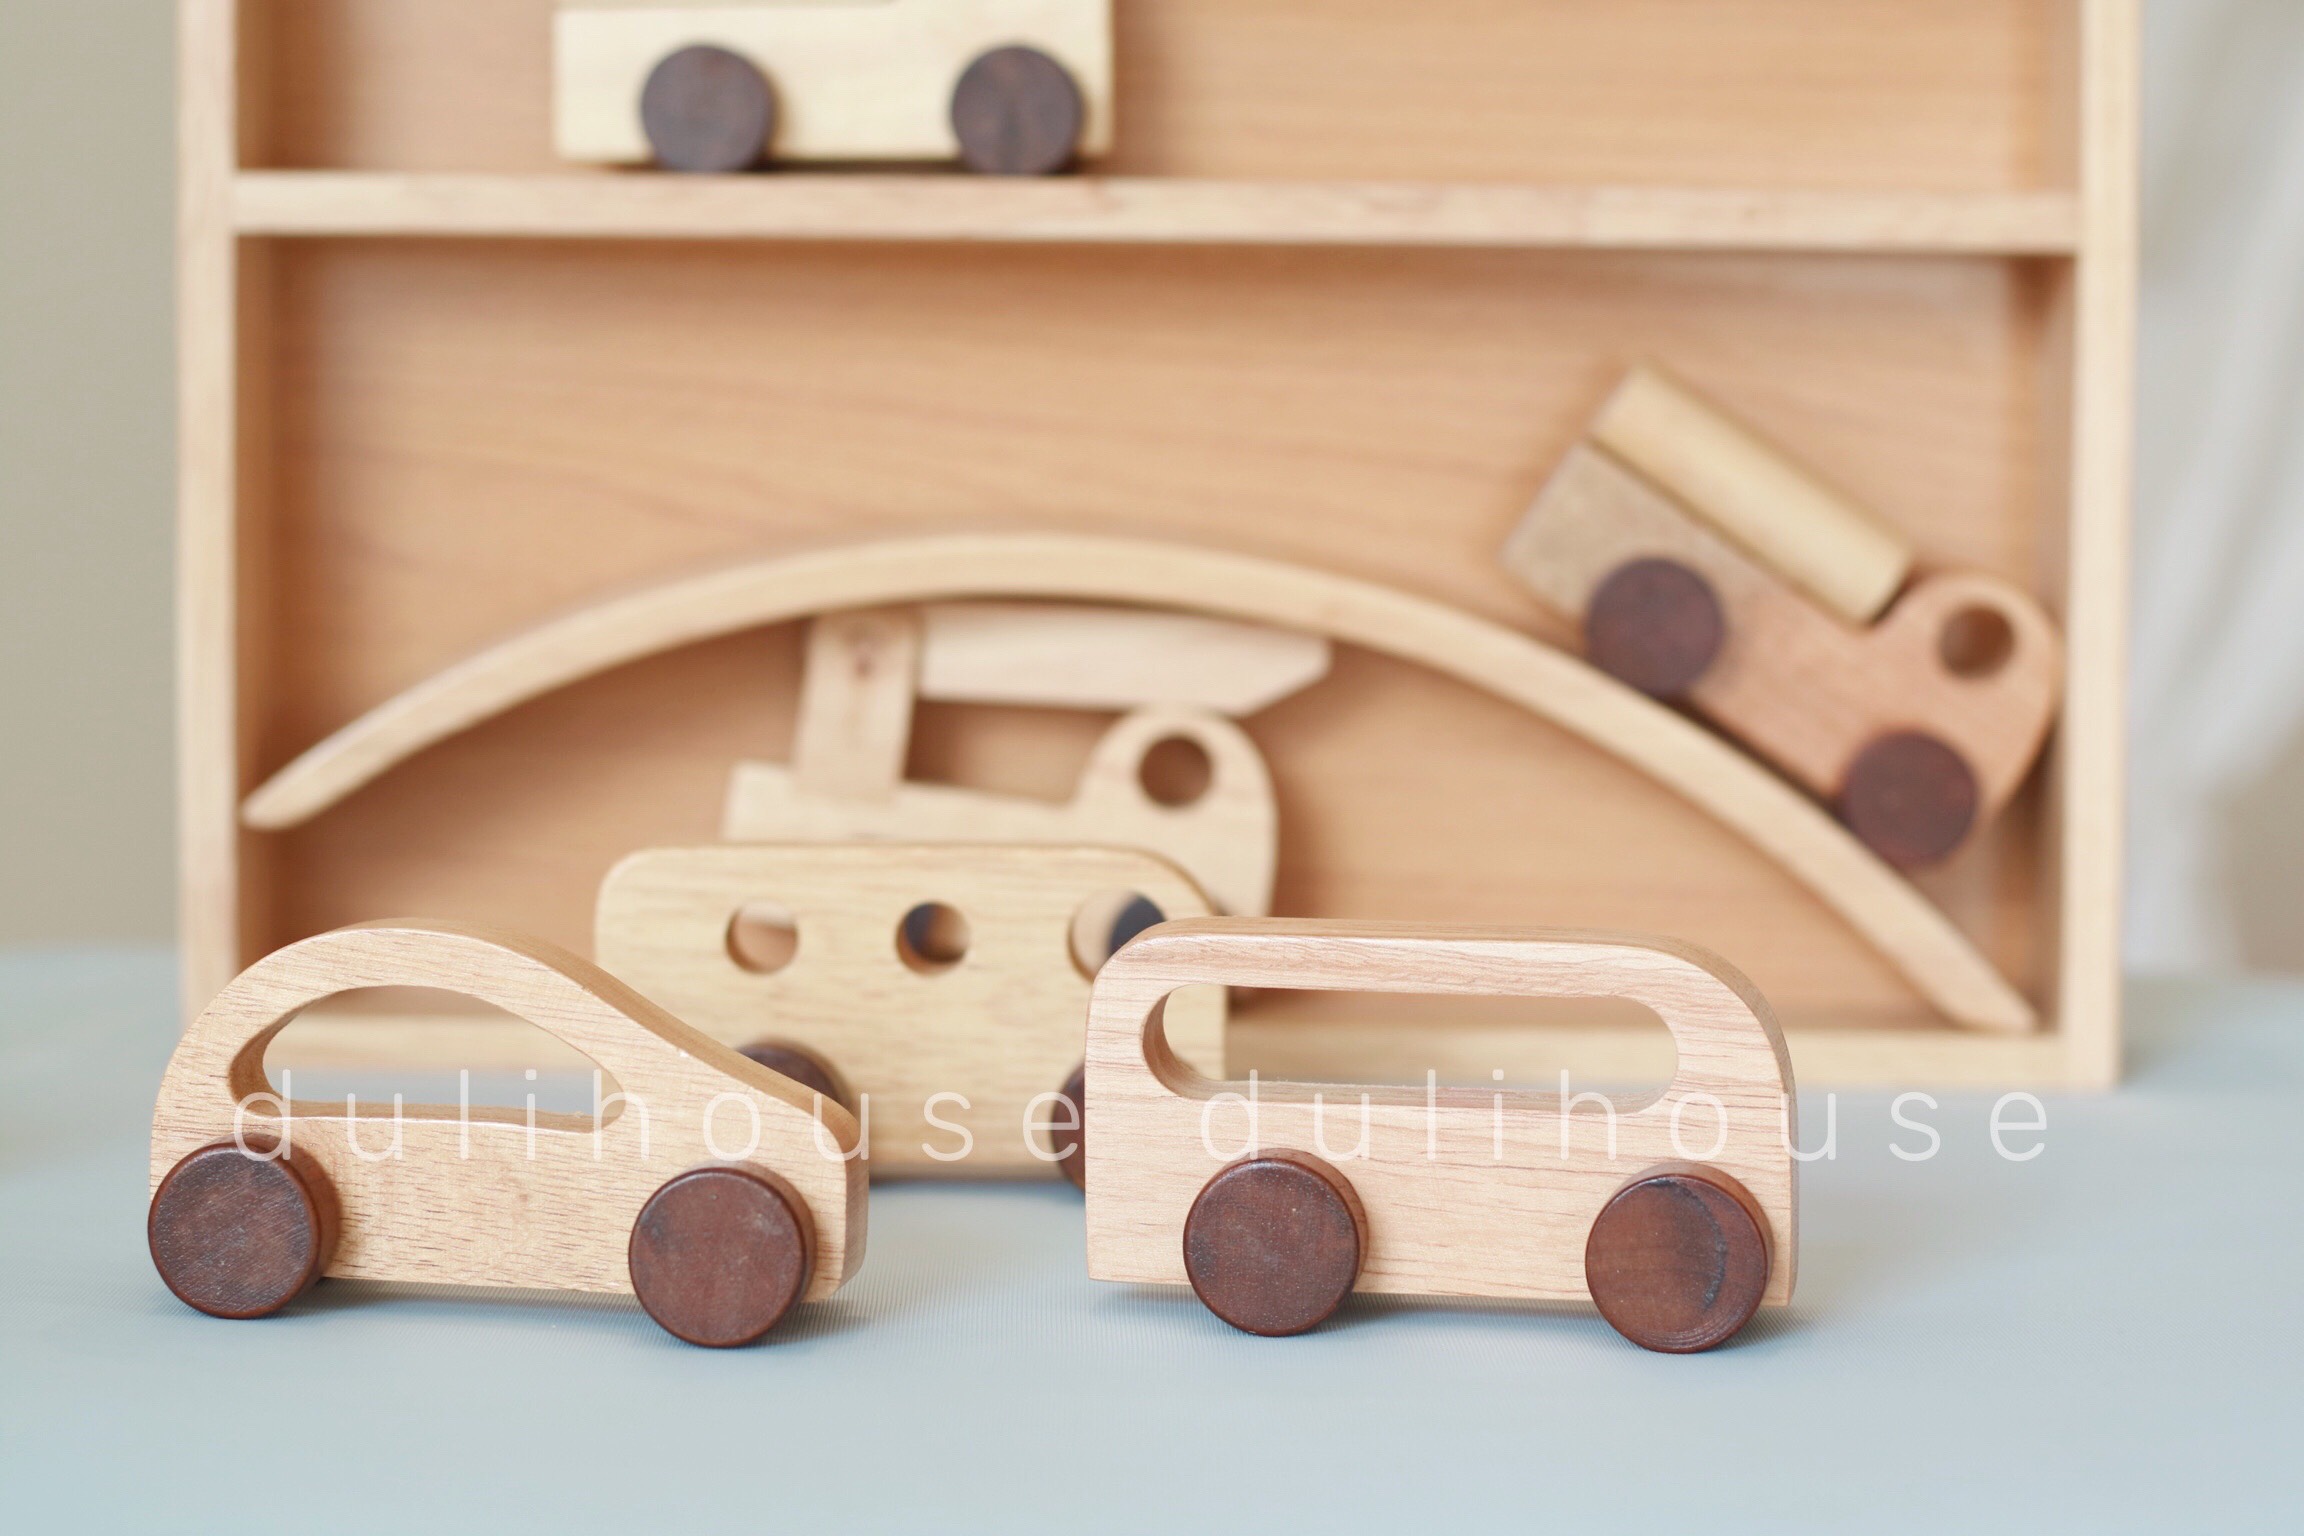 Đồ chơi gỗ cao cấp Phương tiện giao thông, có bánh xe di chuyển, phát triển tư duy, an toàn cho bé, giao ngẫu nhiên